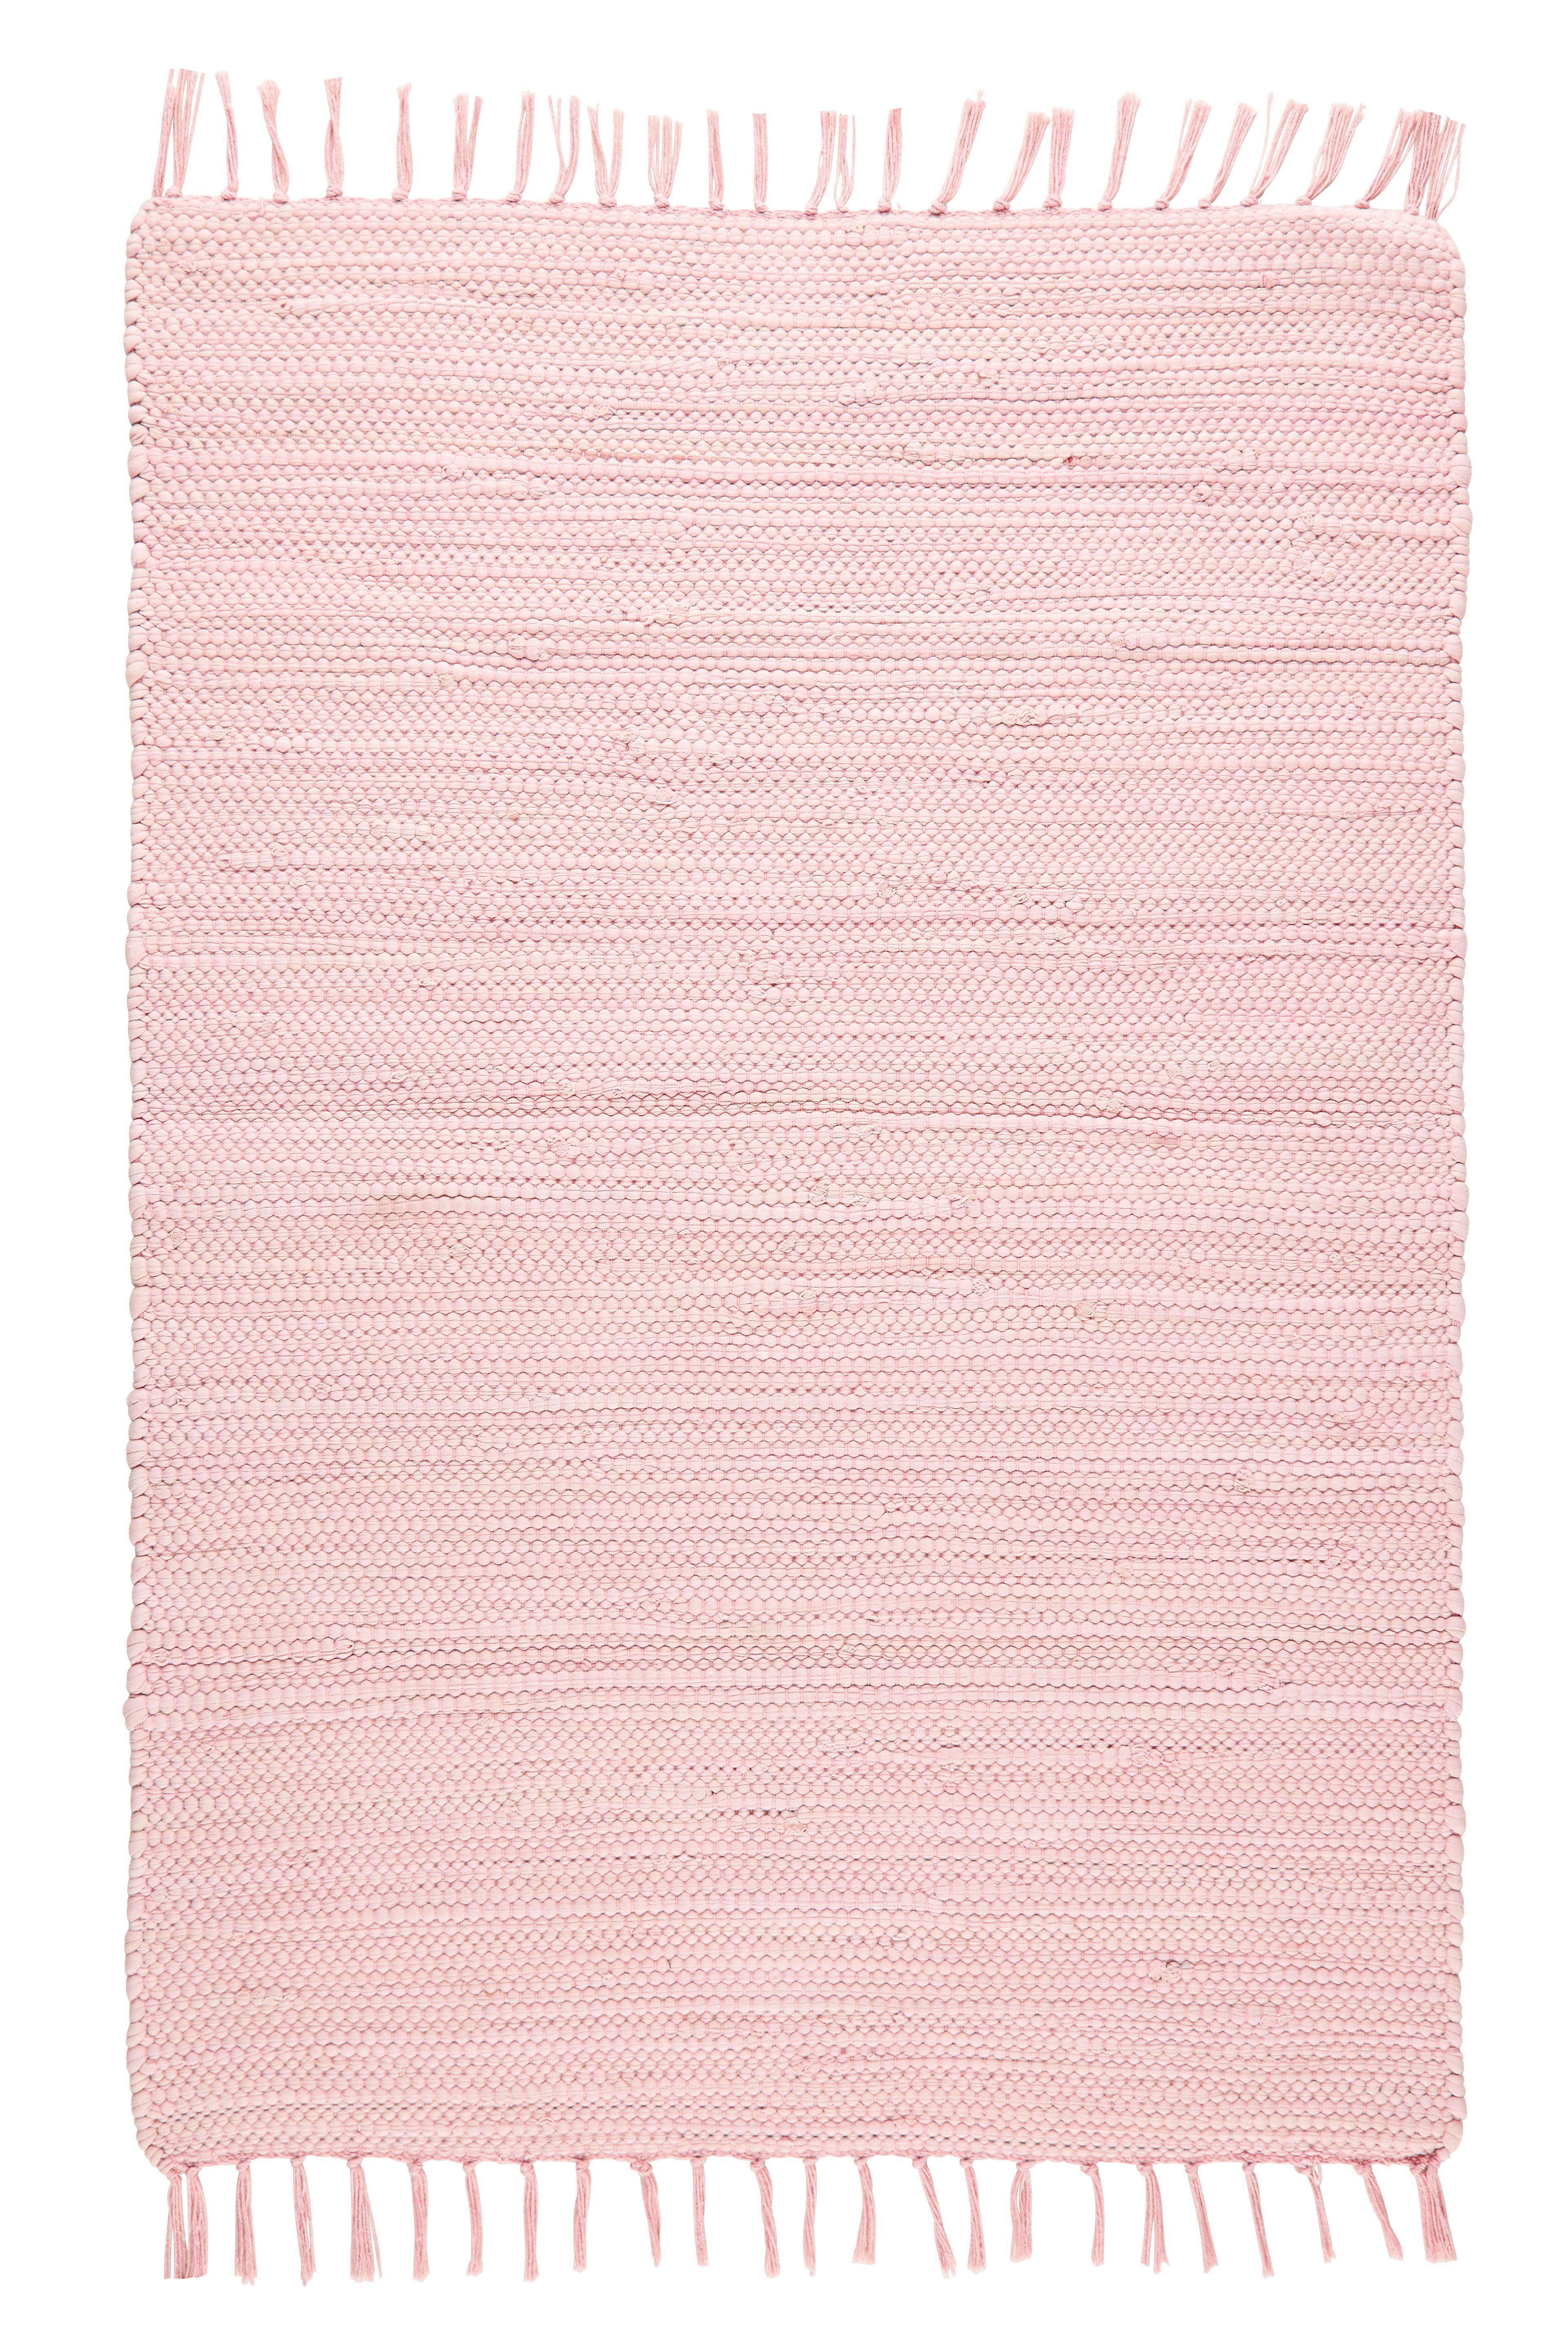 Plátaný Koberec Julia 2, 70/130cm, Ružová - ružová, Romantický / Vidiecky, textil (70/130cm) - Modern Living